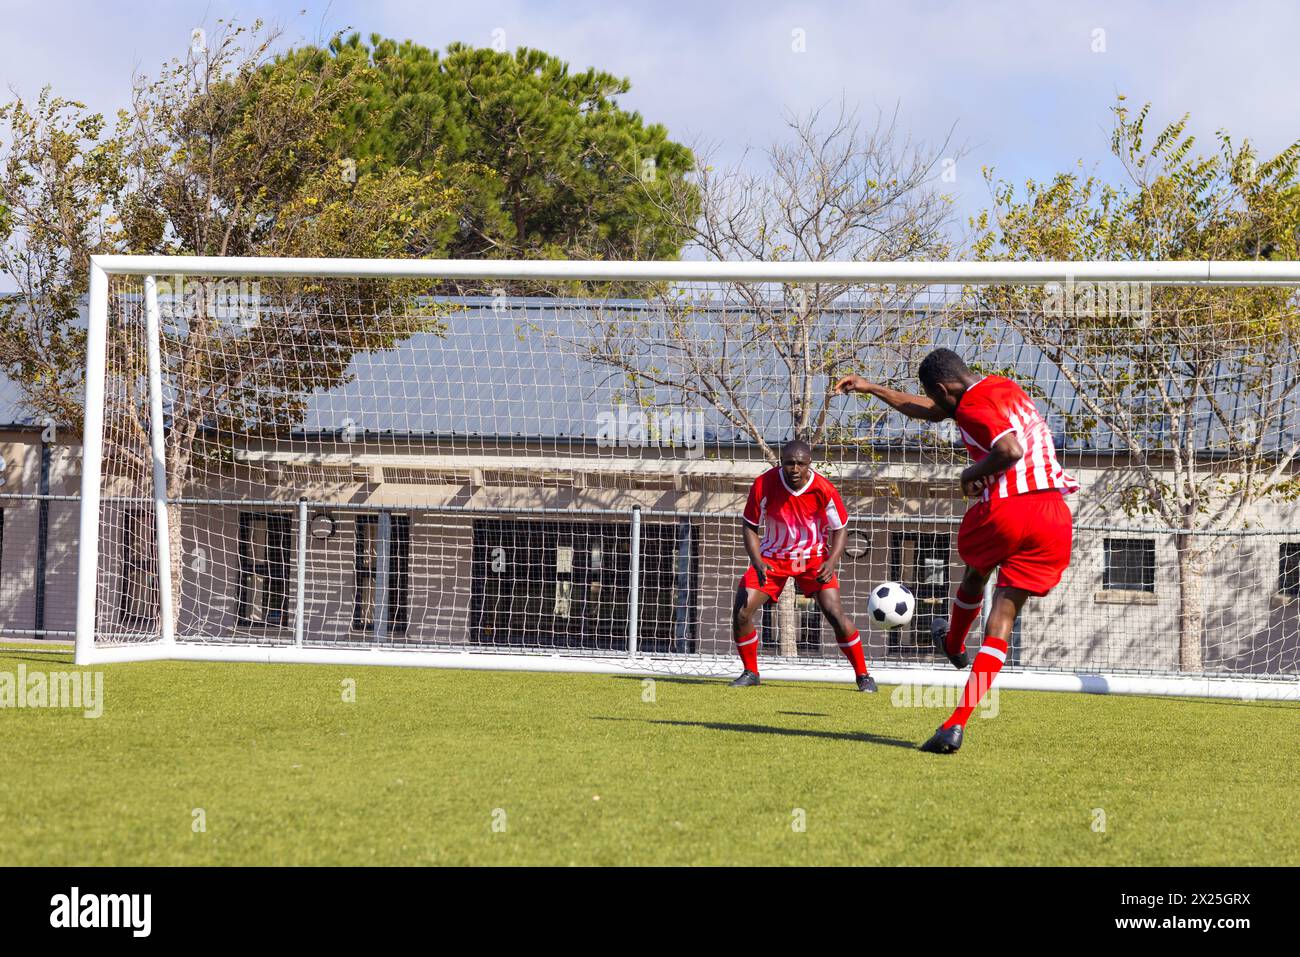 Deux jeunes athlètes afro-américains jouent au football sur le terrain à l'extérieur, l'un d'eux donnant un coup de pied dans la balle Banque D'Images